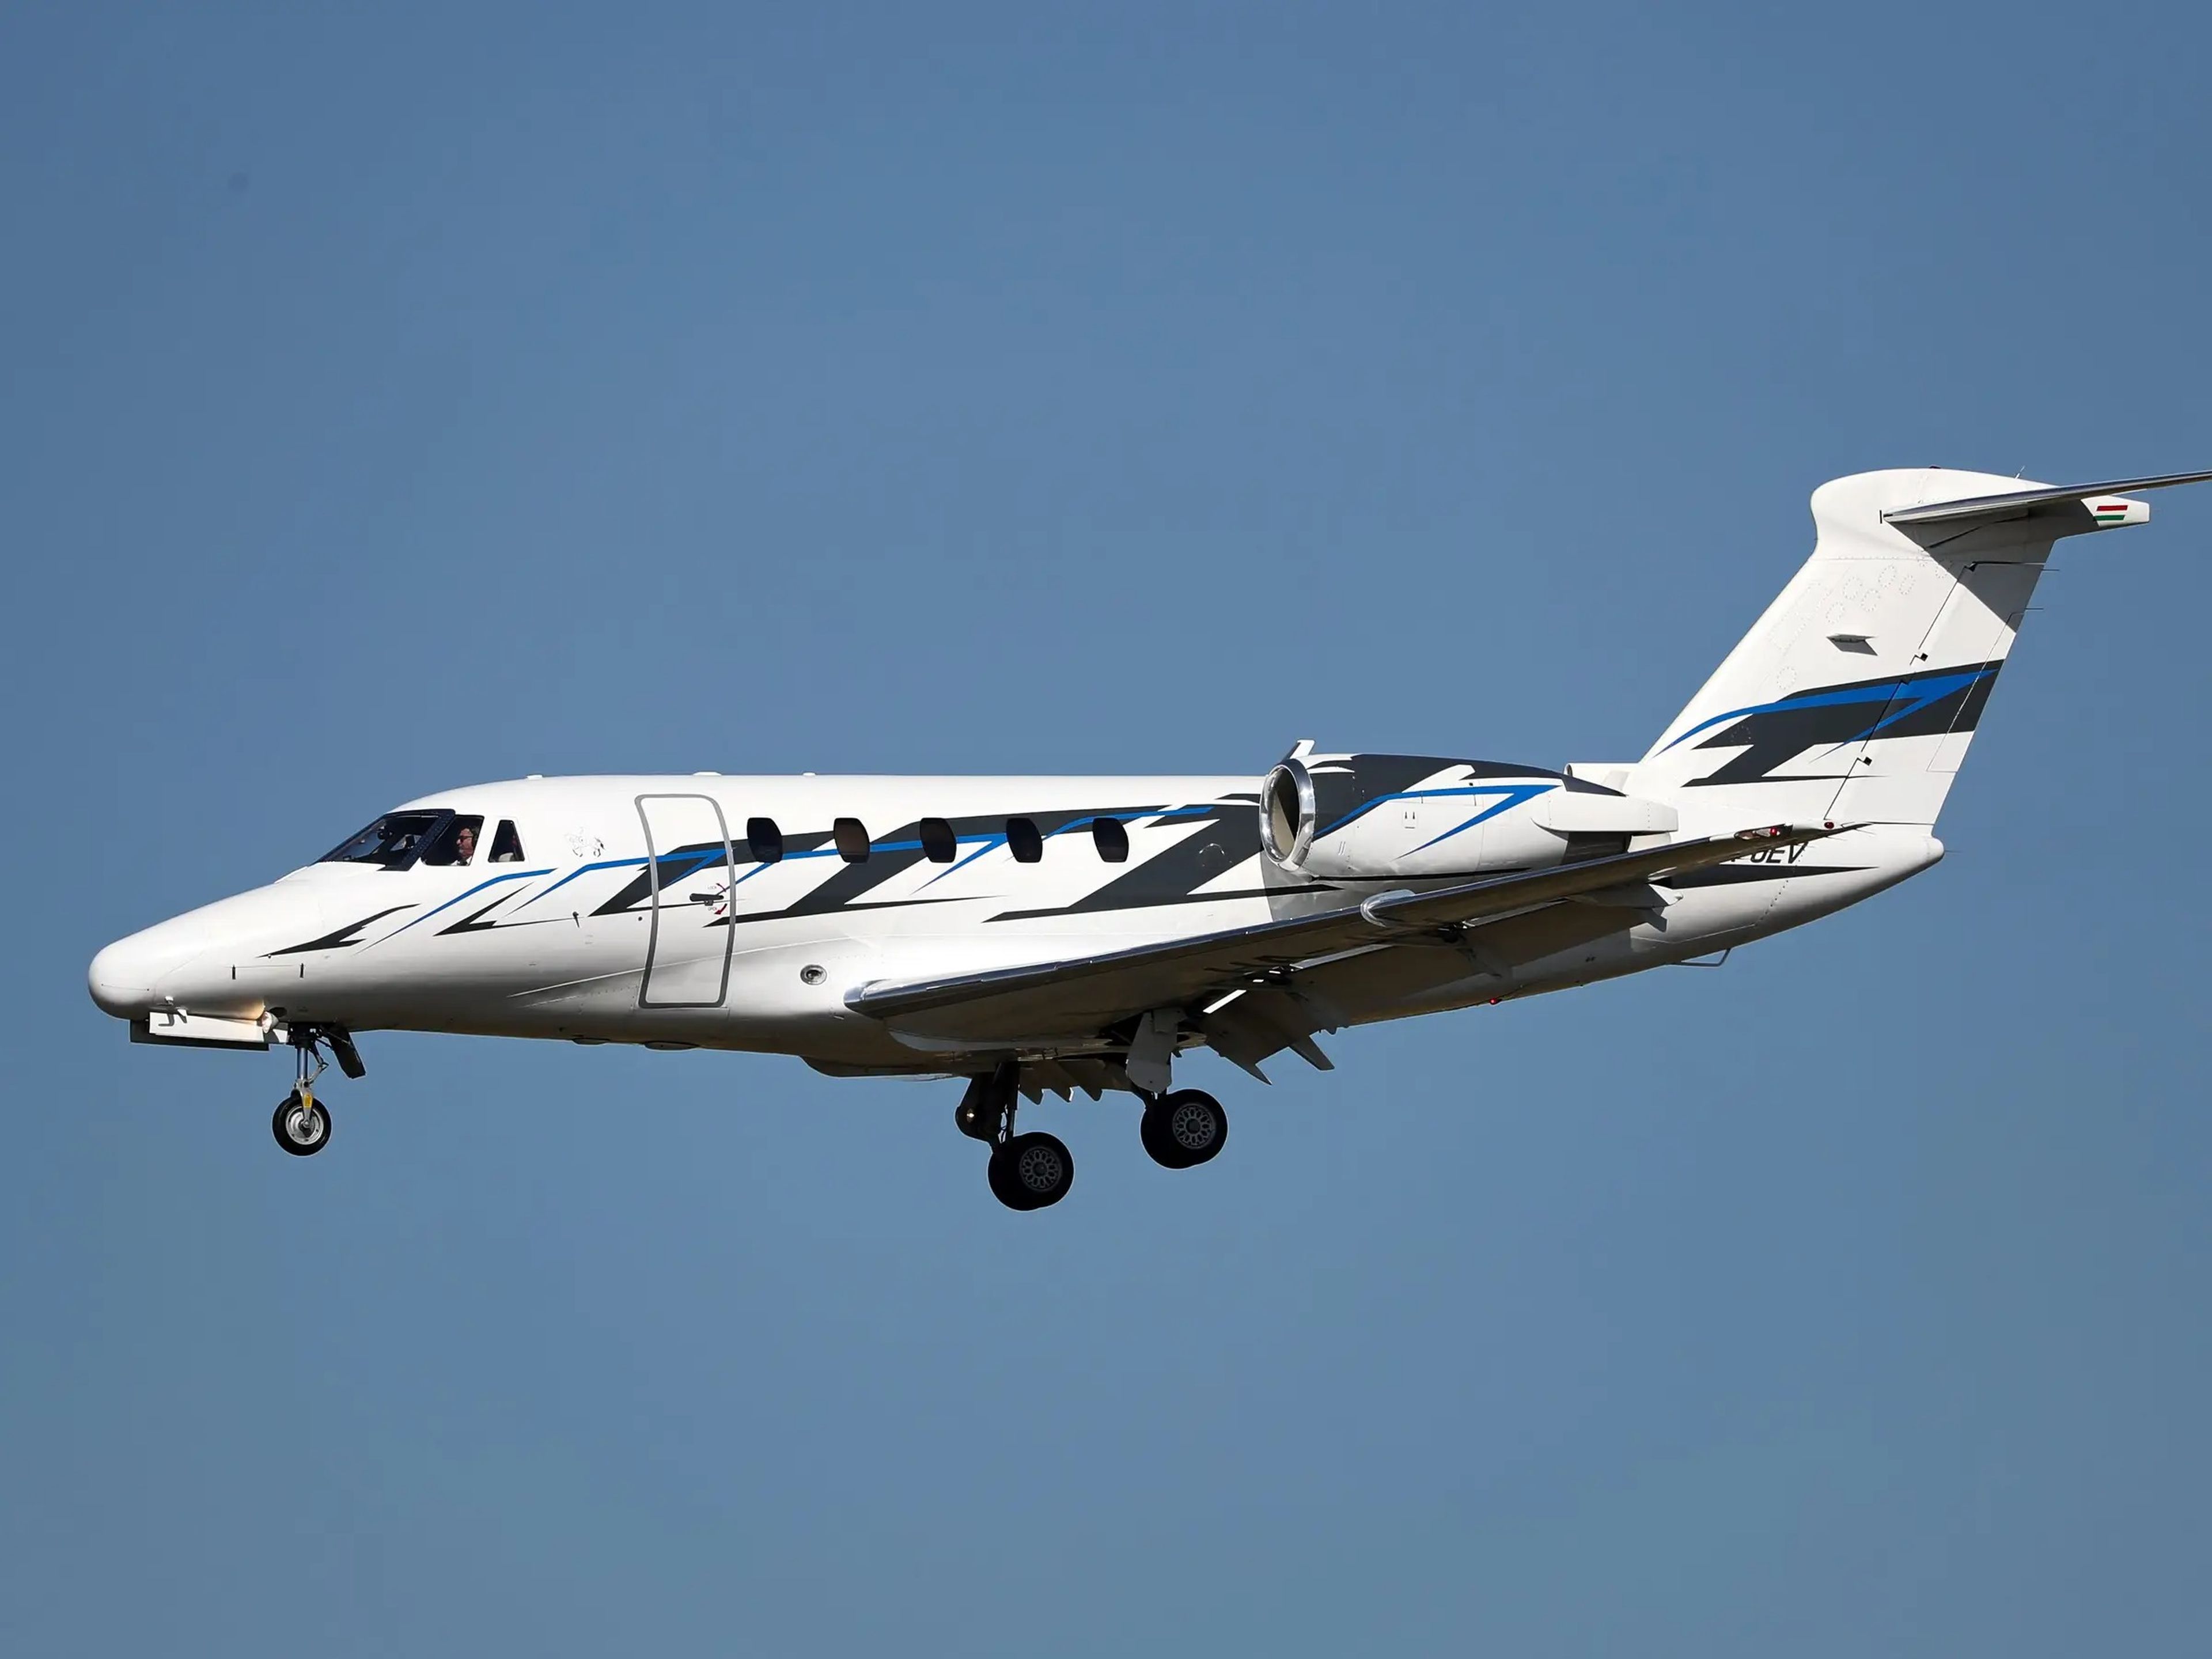 Stephen Prince, empresario de Georgia, ha decidido vender su Cessna 650 tras darse cuenta del impacto ambiental de los viajes en jet privado.